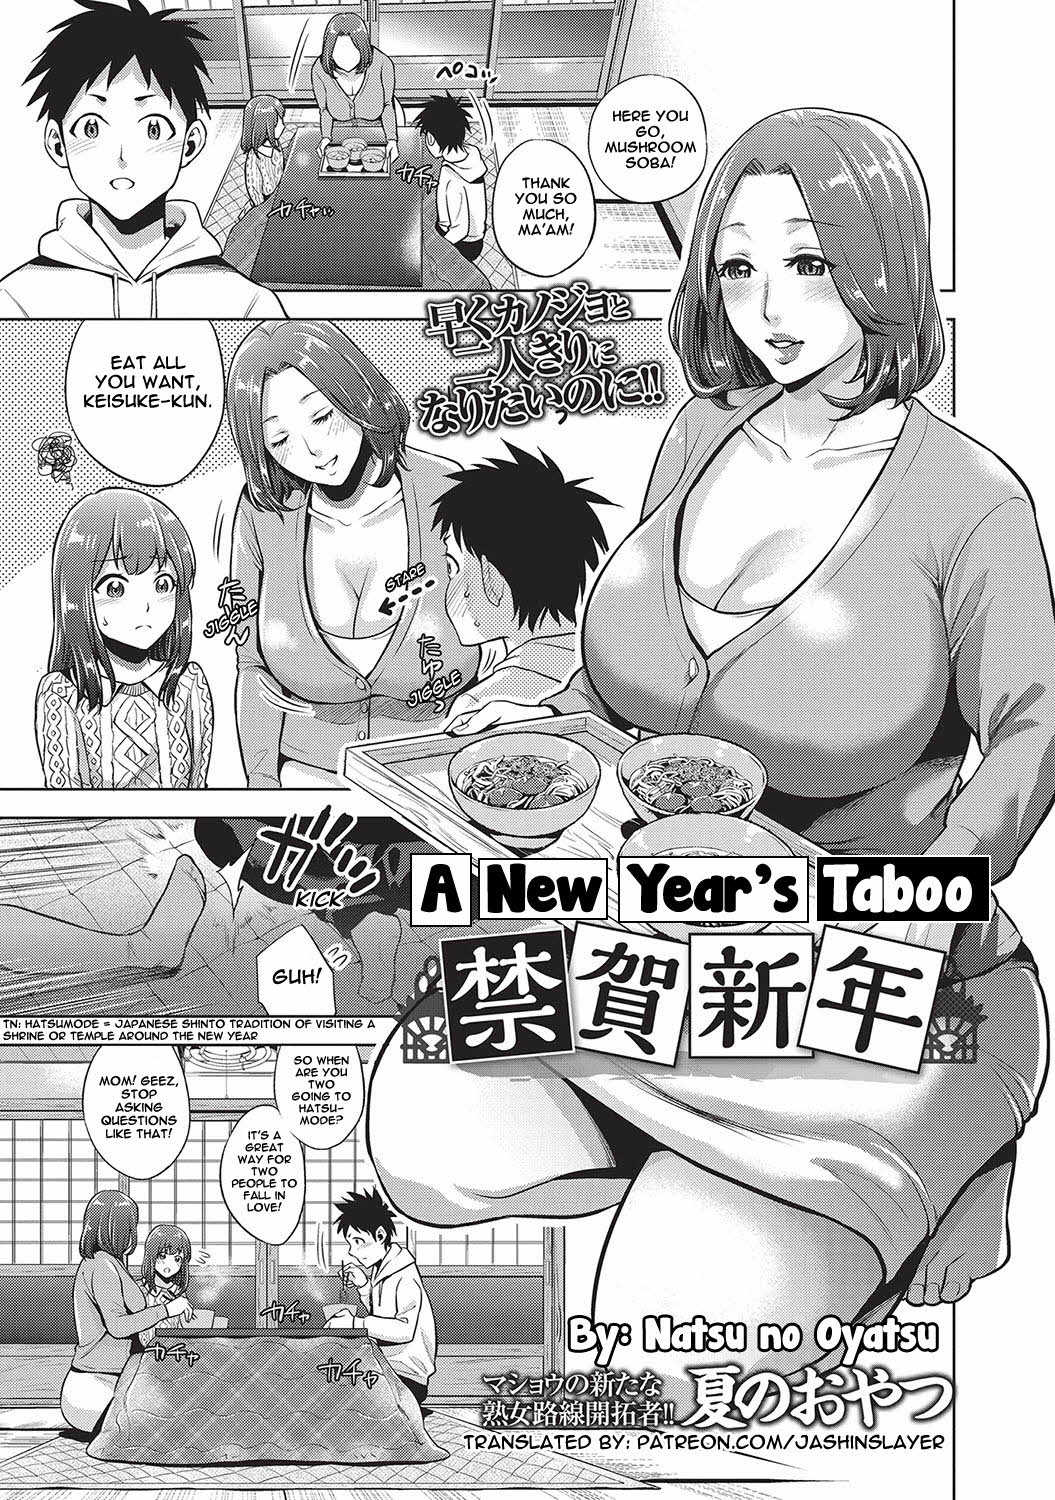 [Natsu no Oyatsu] A New Year's Taboo Hentai Comic